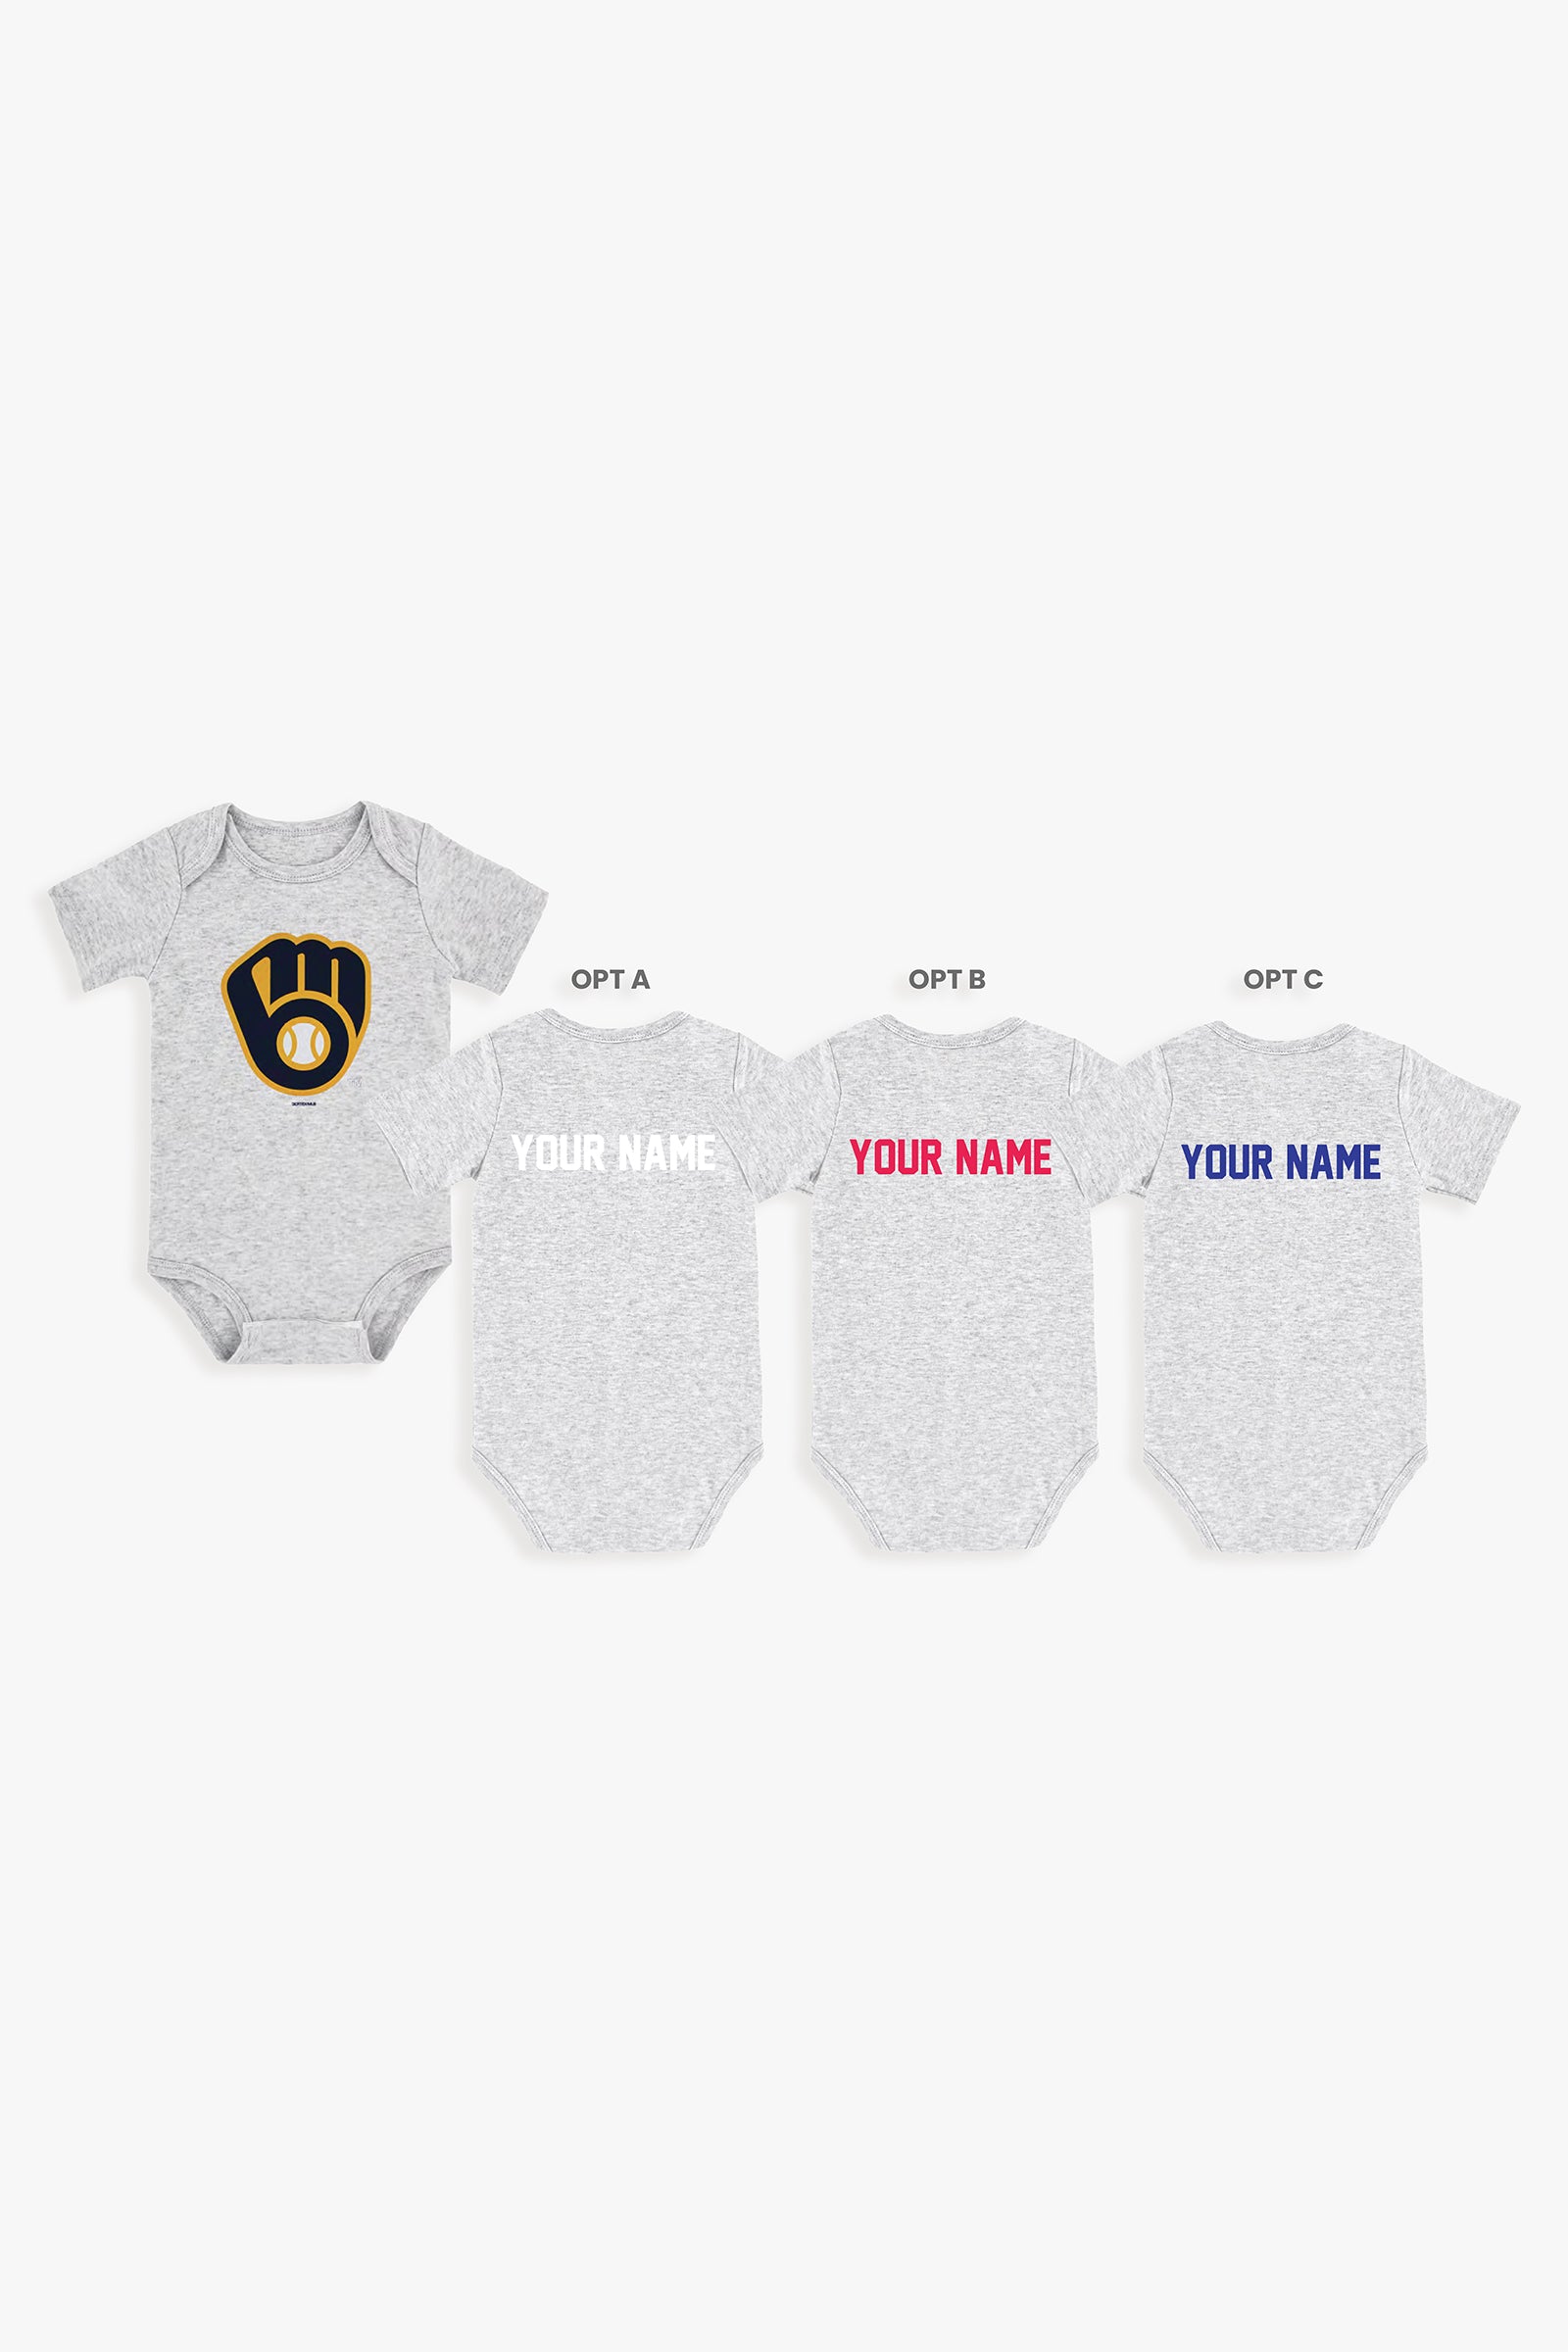 Gertex Customizable MLB Baby Onesie Bodysuit in Grey (6-9 Months)